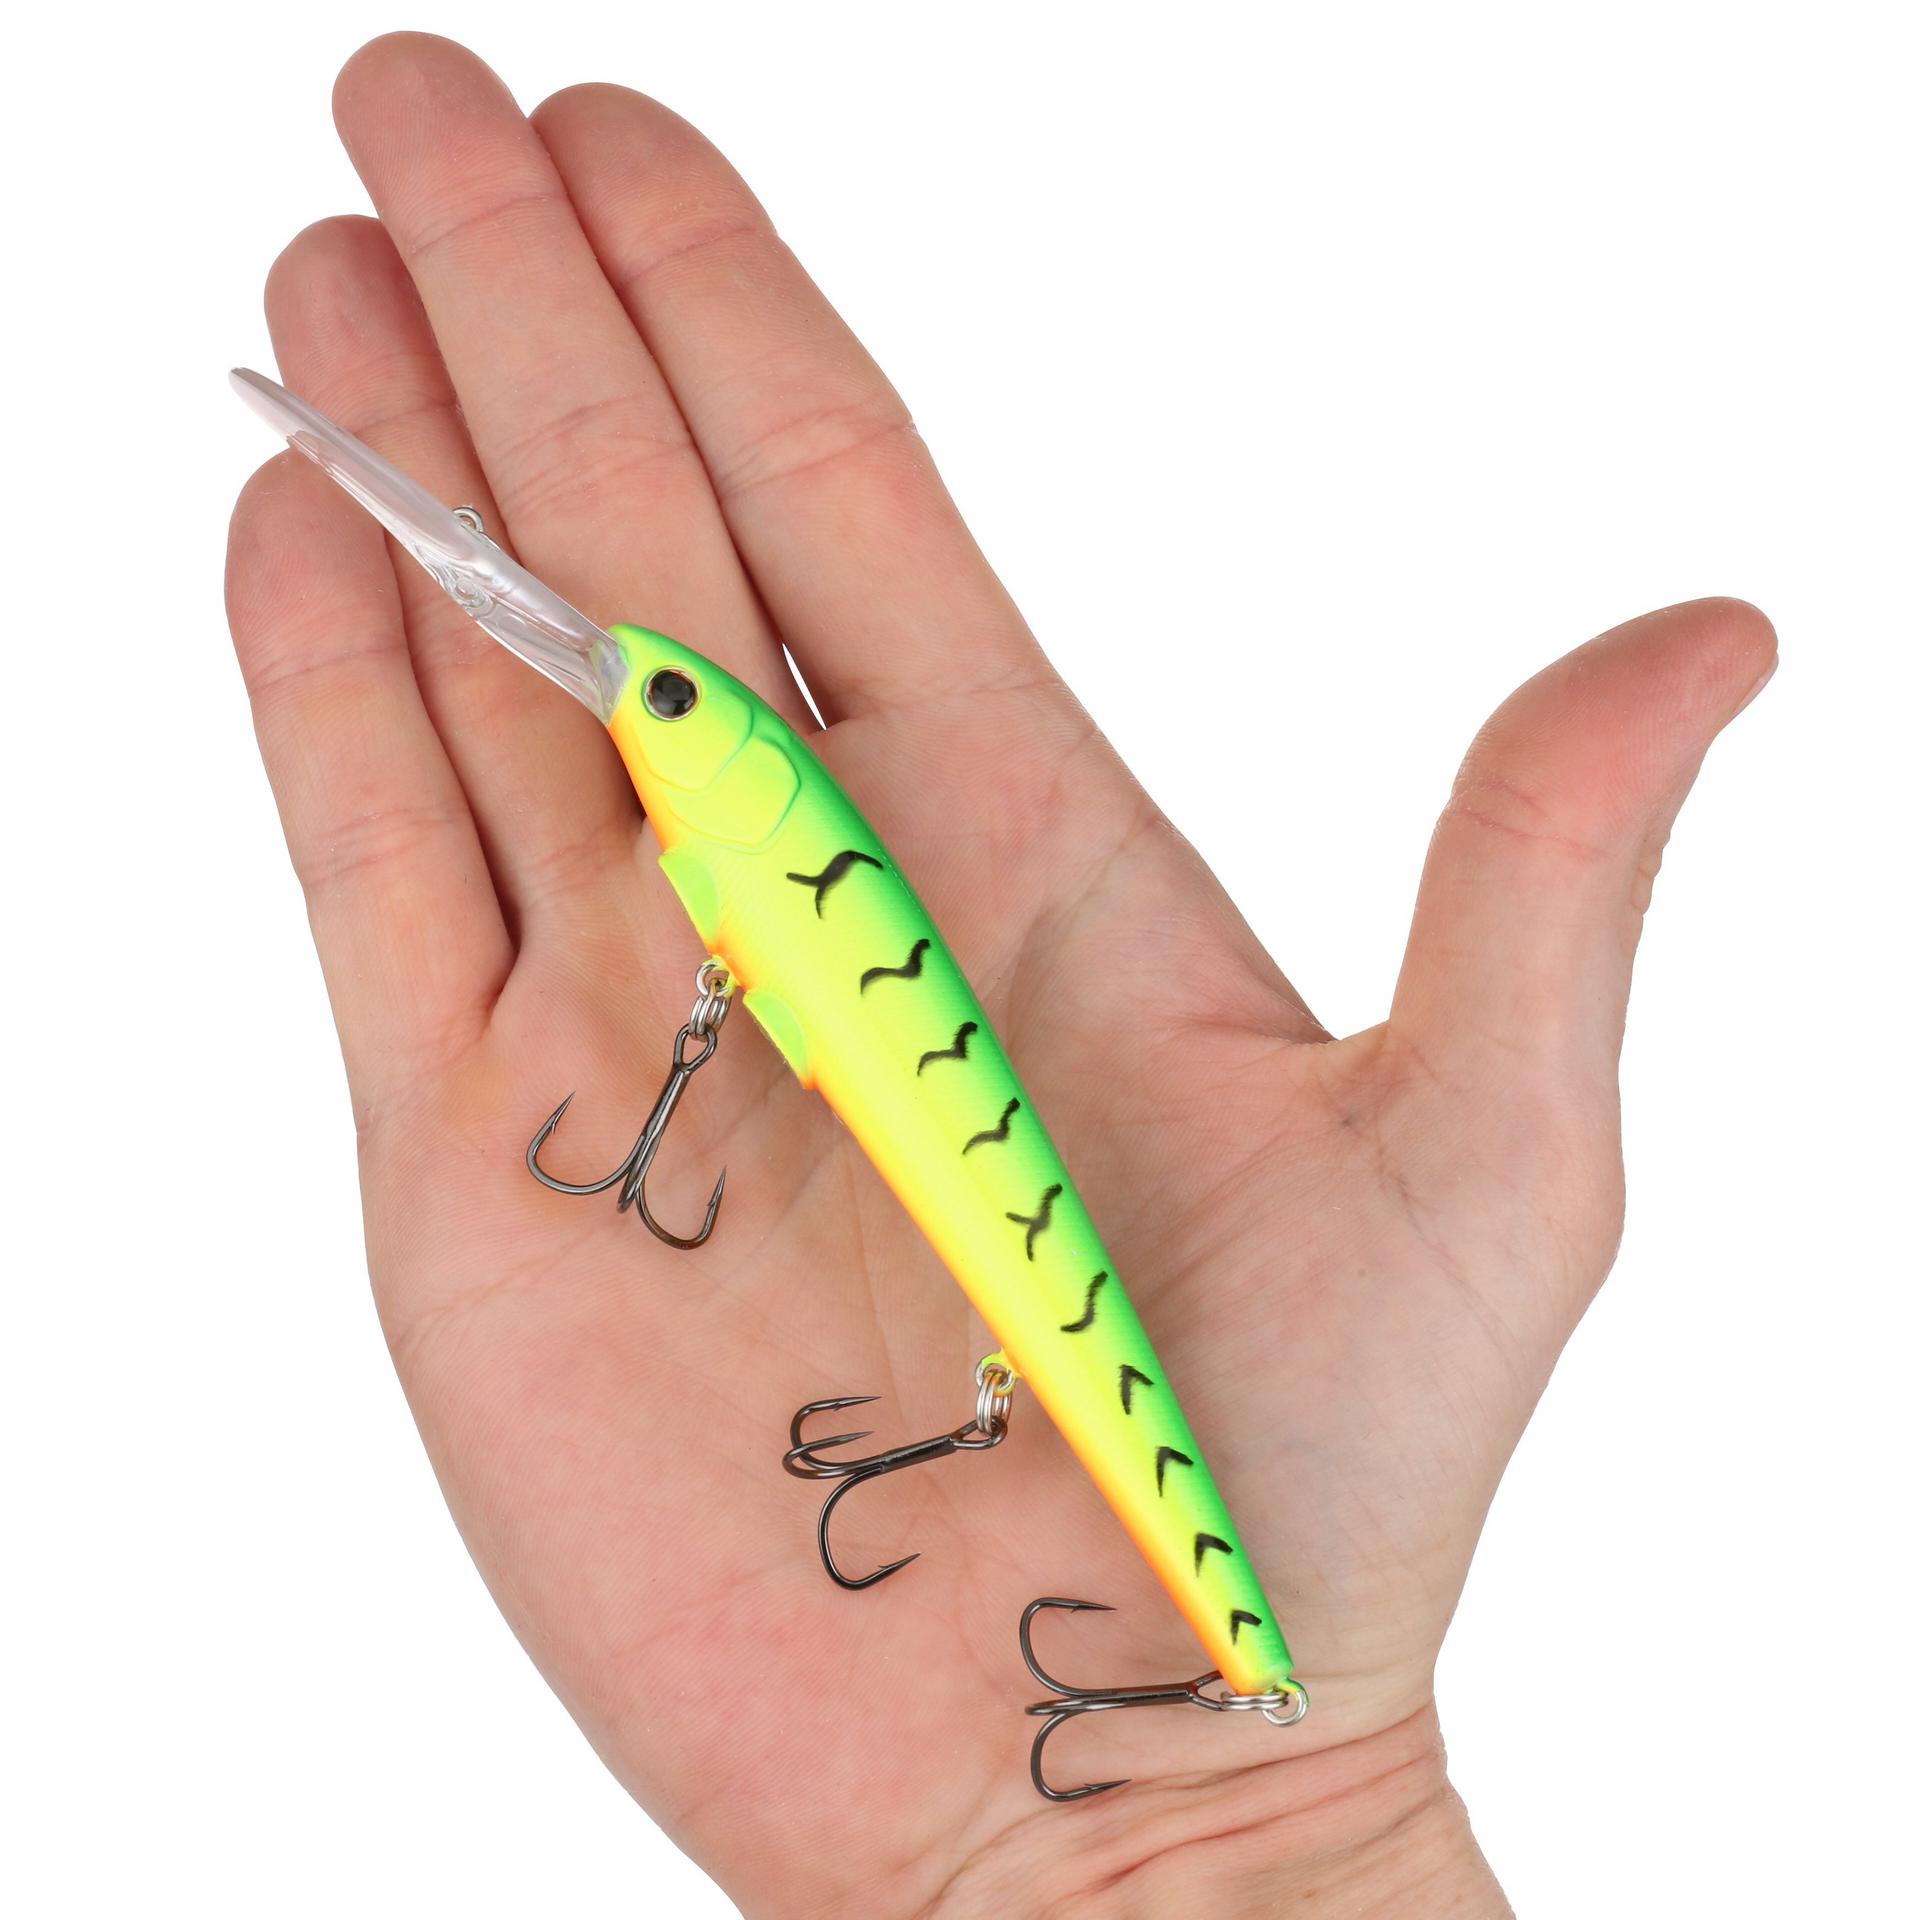 Berkley DeepHitStick 12 Firetiger HAND | Berkley Fishing